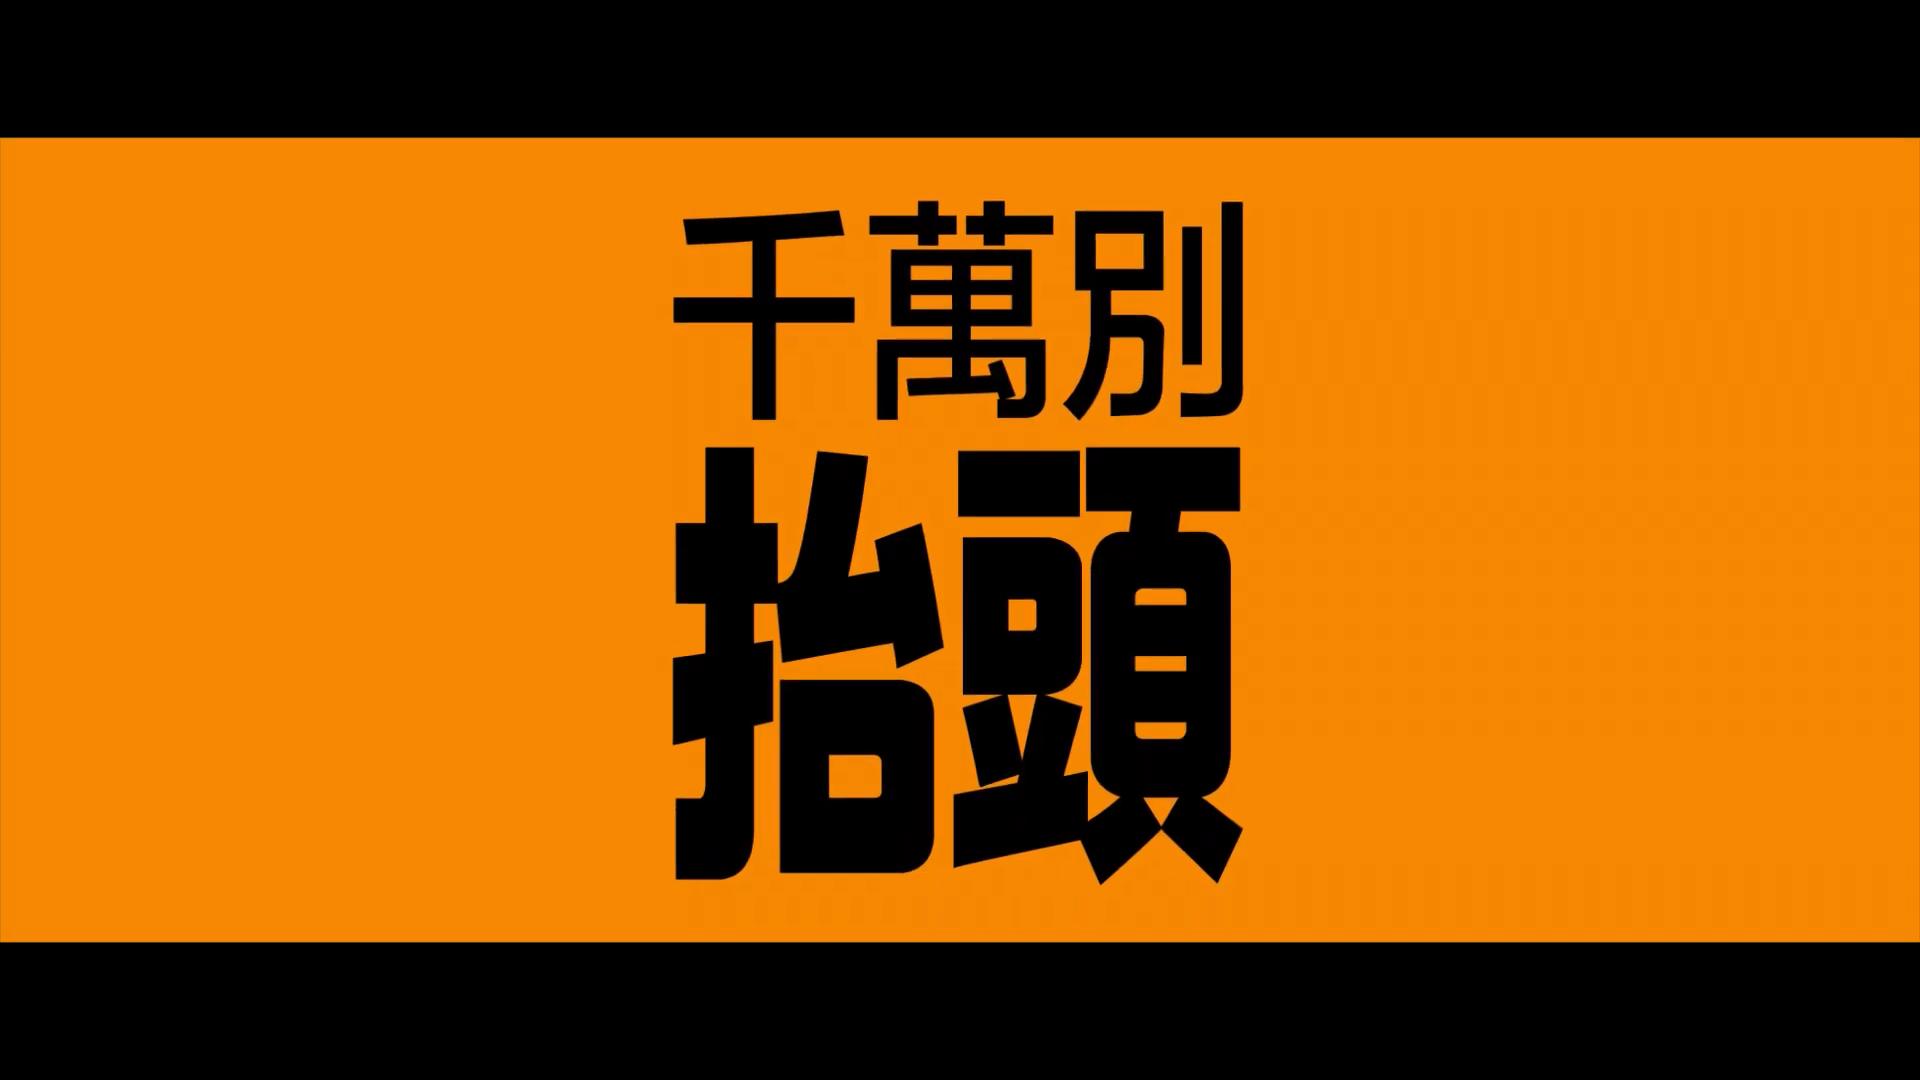 网飞《千万别抬头》中文预告 12月10日院线首映